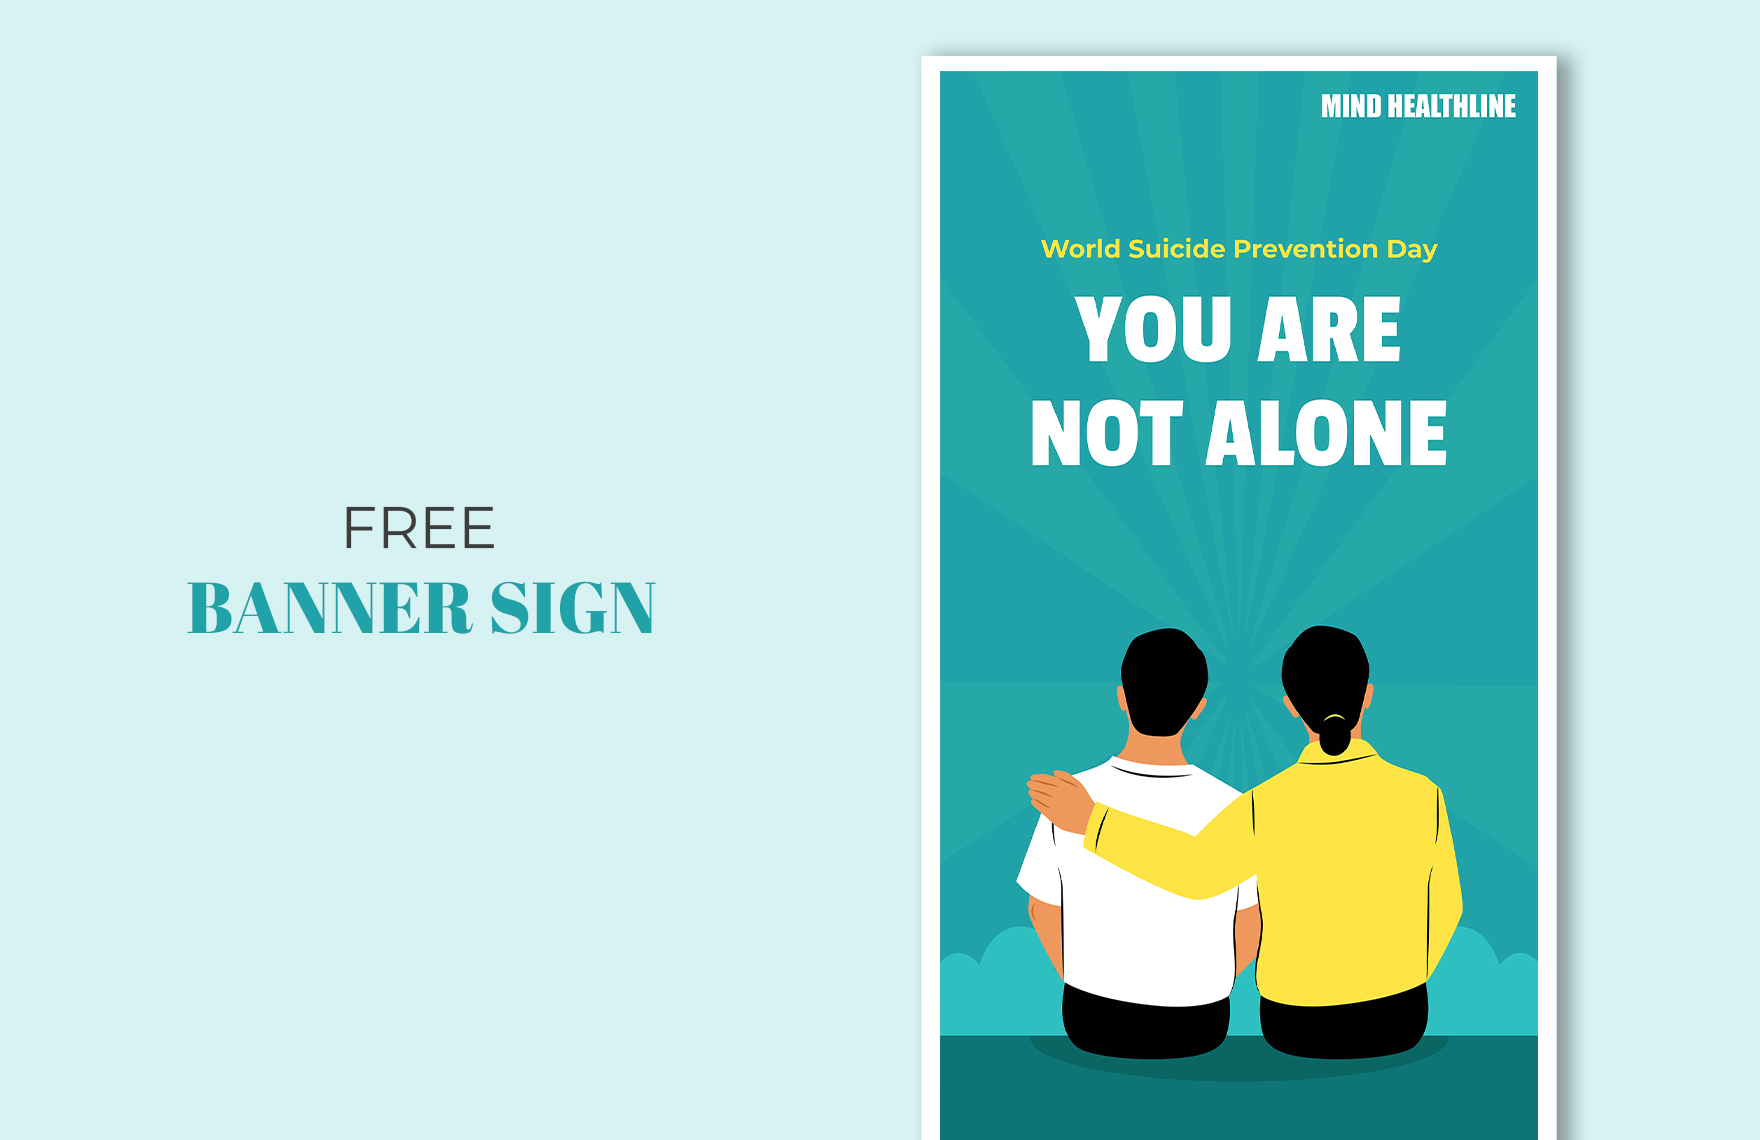 World Suicide Prevention Day Banner Sign in PDF, Illustrator, SVG, JPG